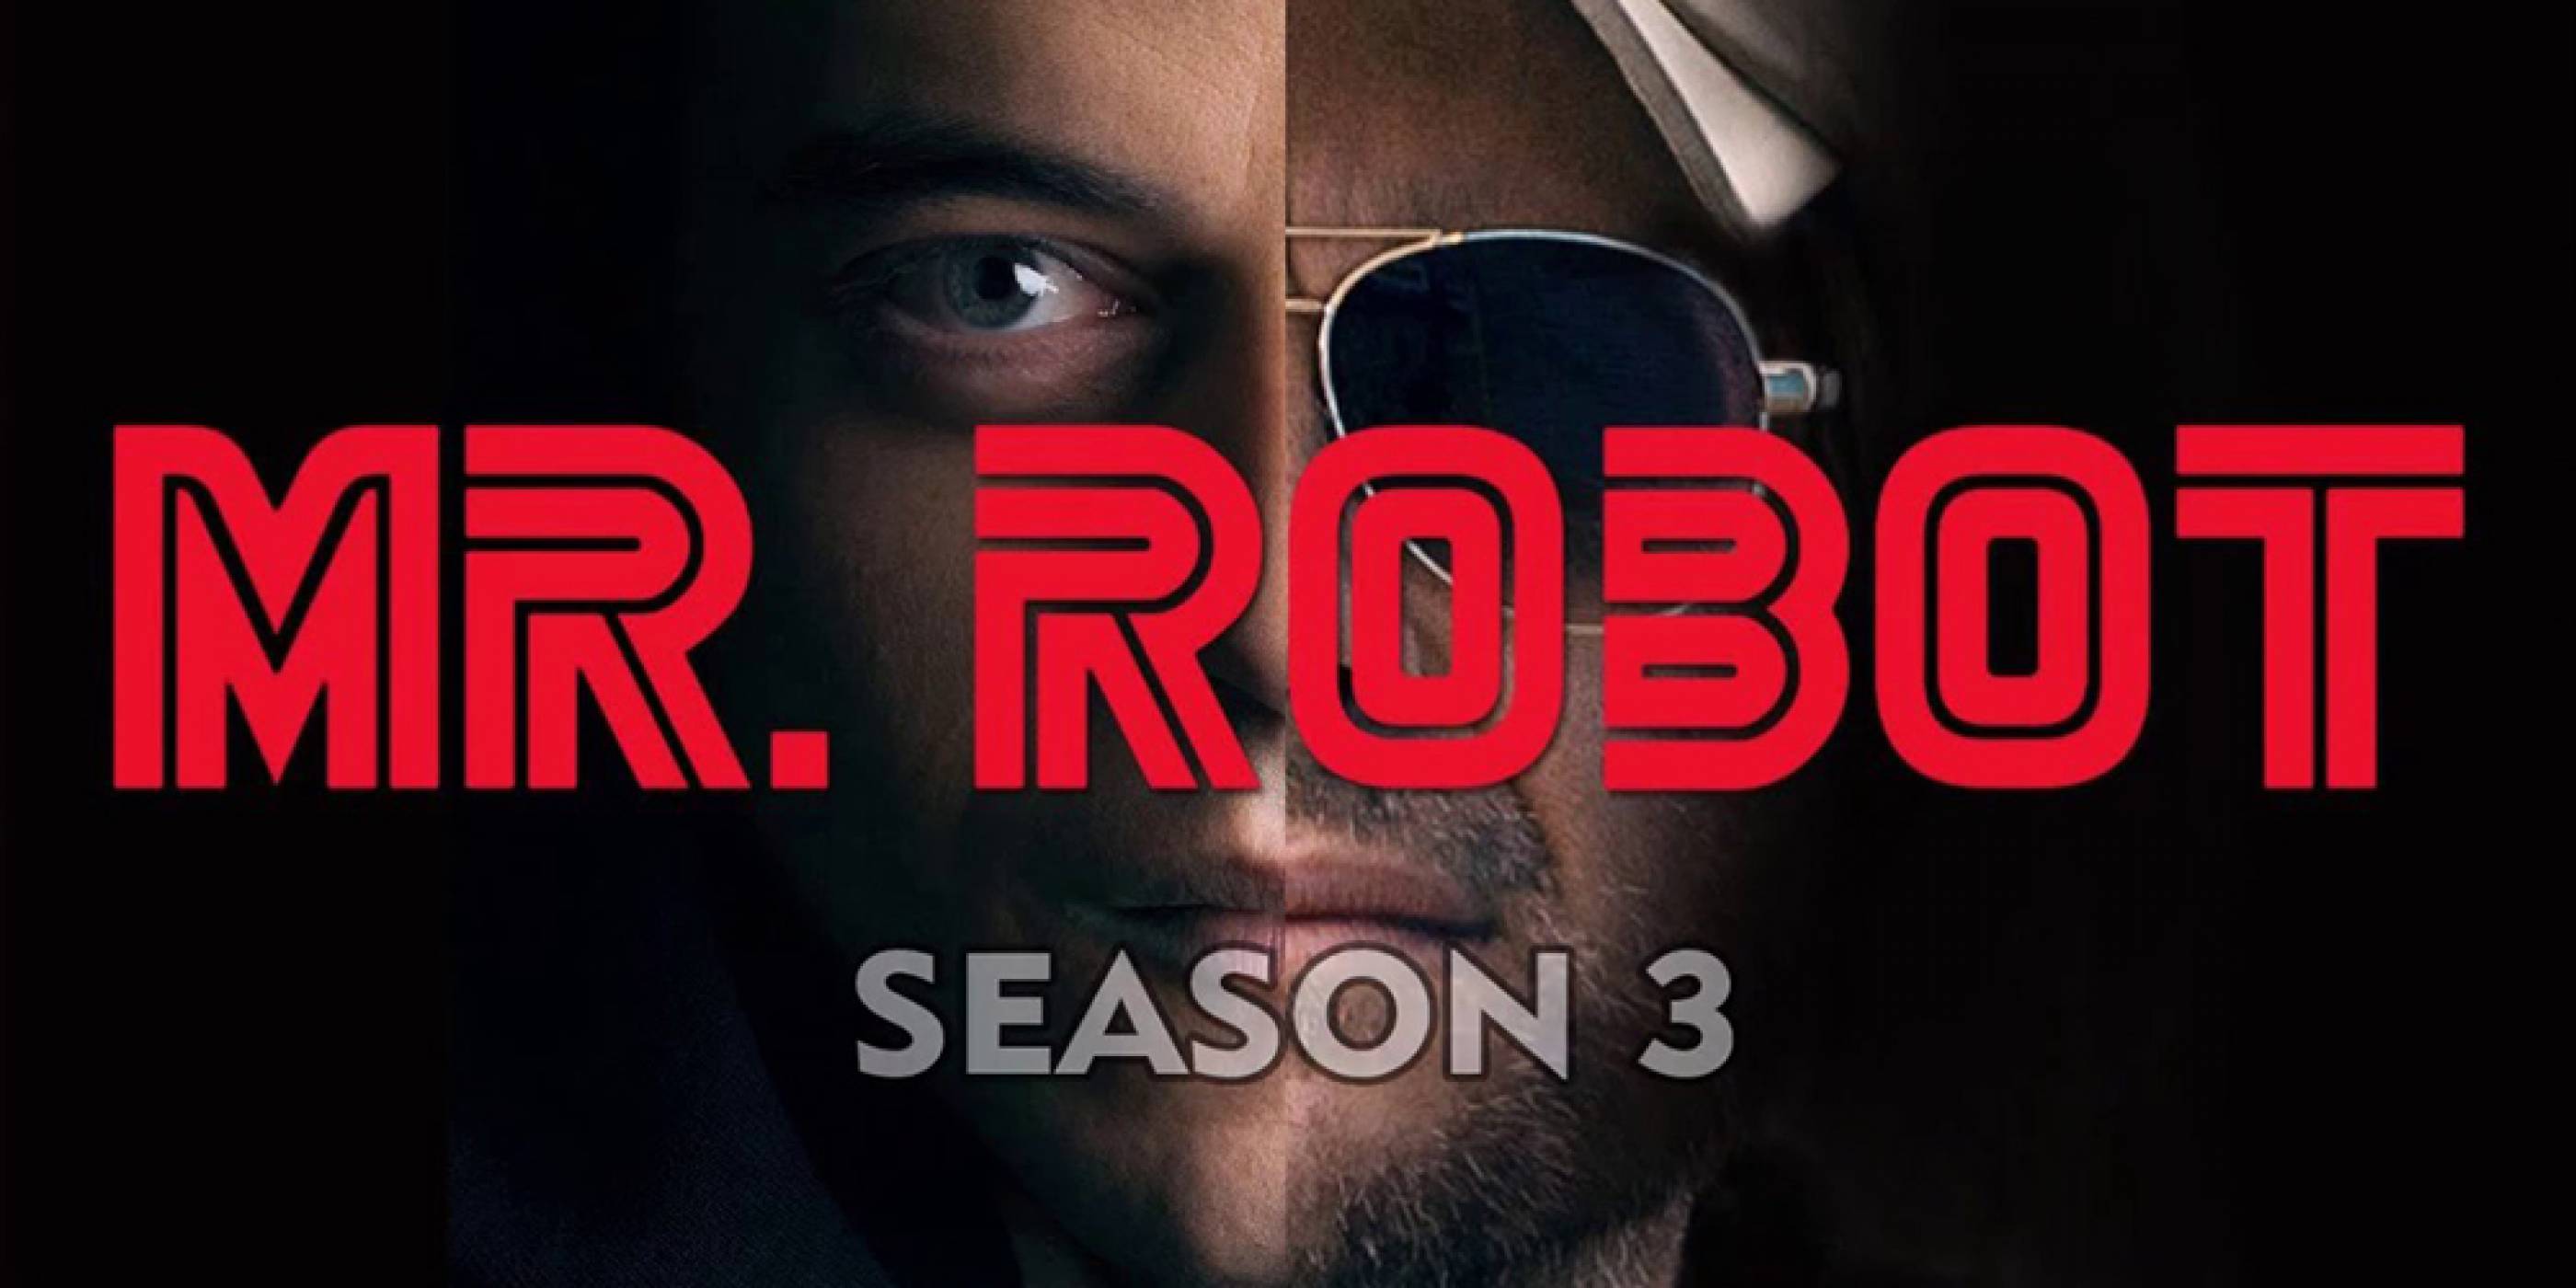 Първият трейлър на Mr.Robot, сезон 3 е тук и изглежда доста зловещо